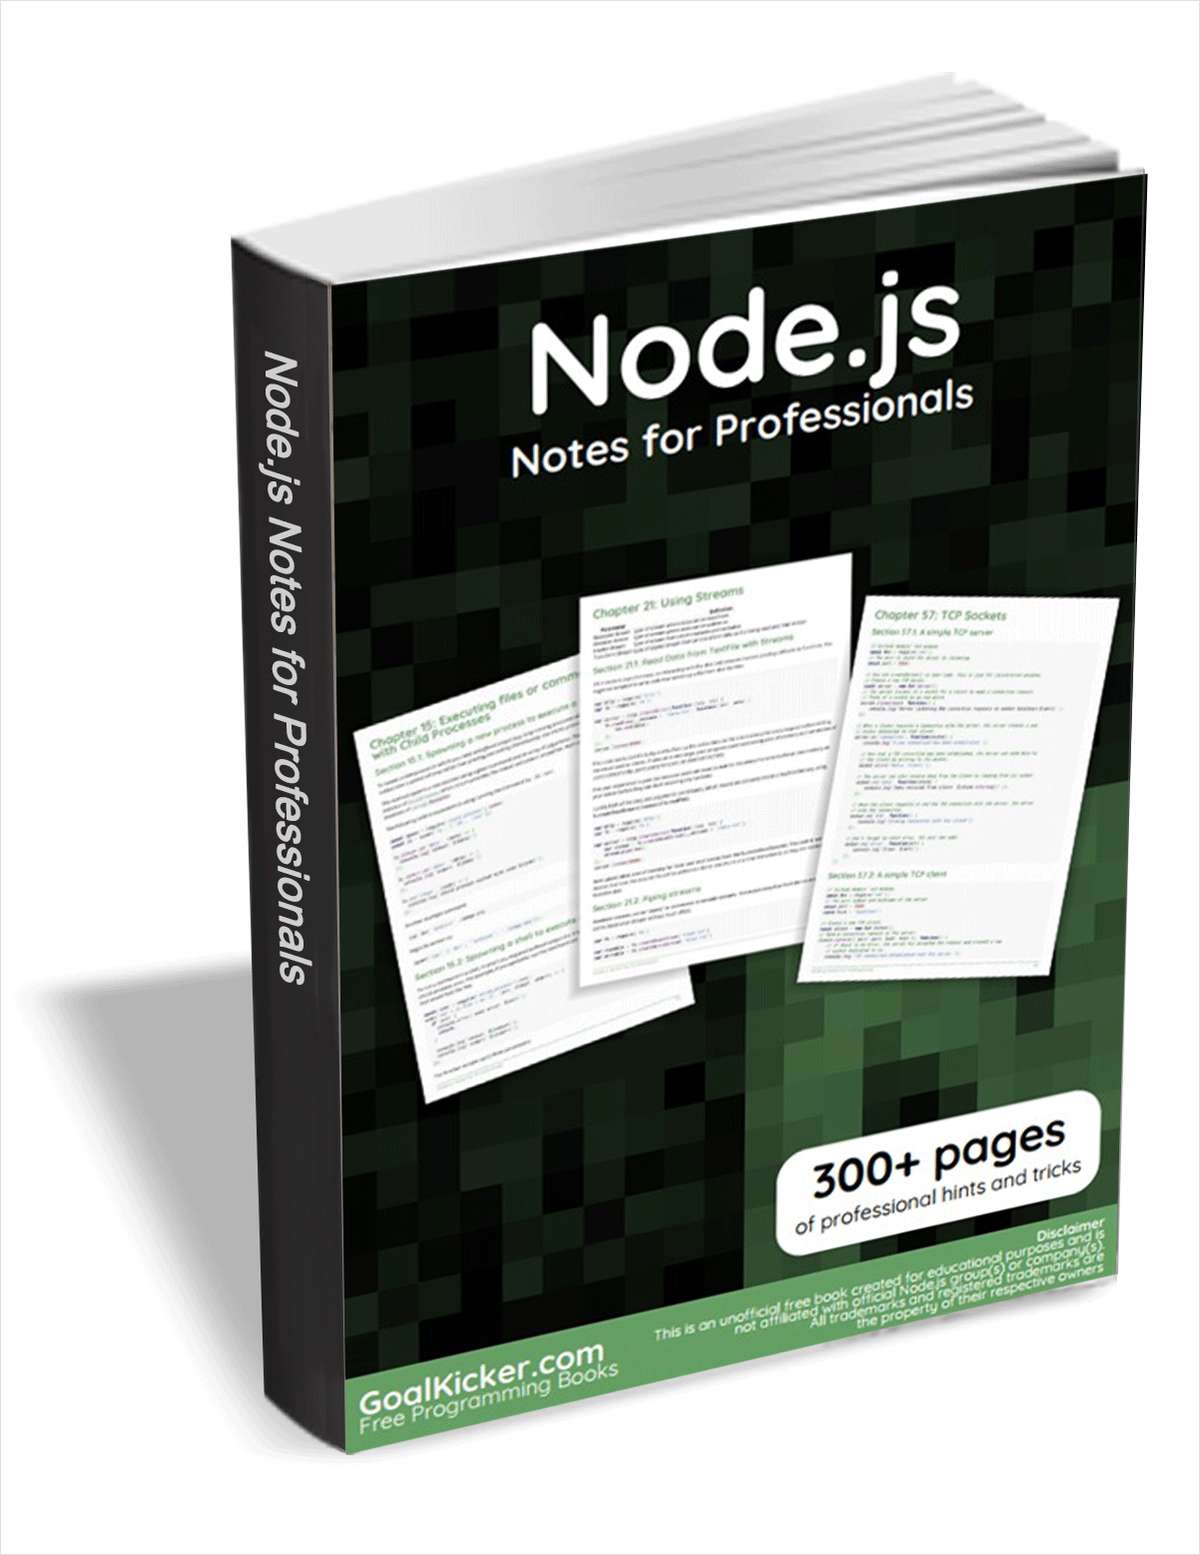 Node.js Notes for Professionals